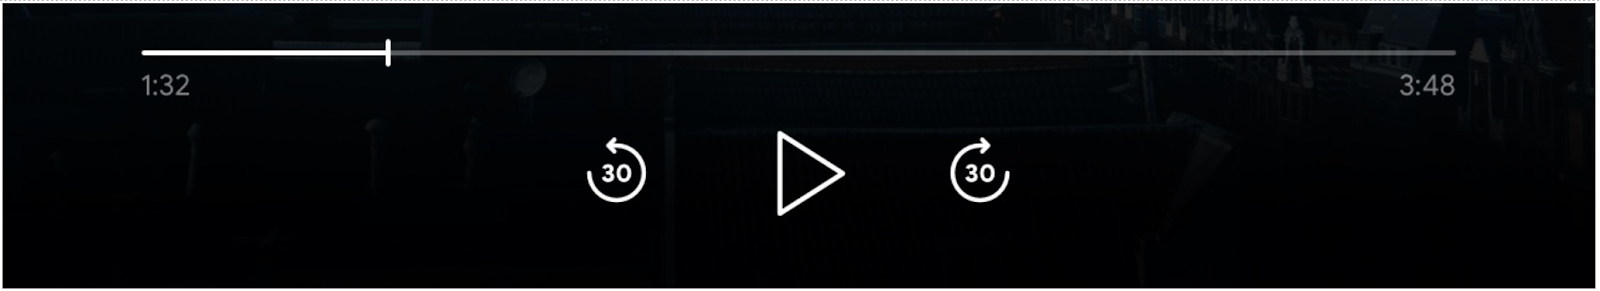 Imagem dos controles do player de mídia: barra de progresso, botão &quot;Reproduzir&quot;, botões &quot;Pular para frente&quot; e &quot;Pular para trás&quot; ativados